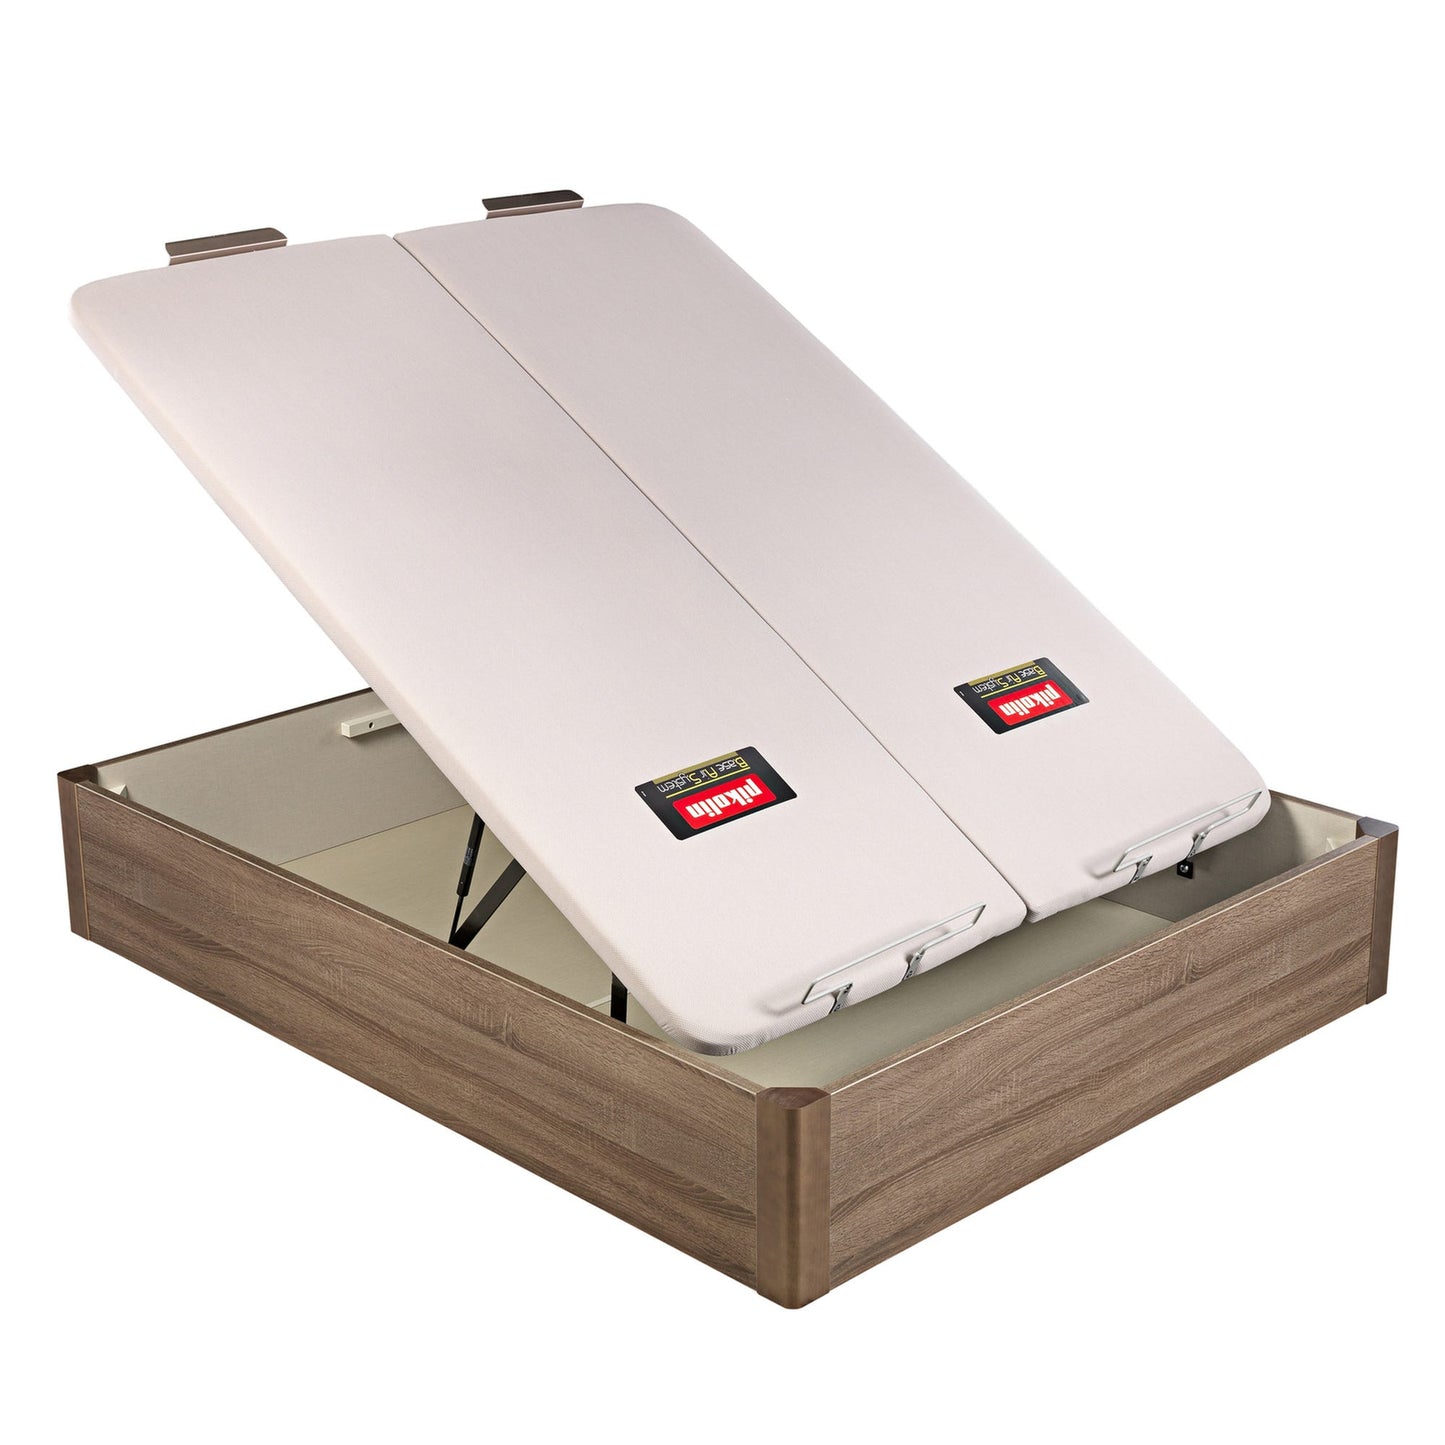 Canapé abatible de madera de tapa doble de color roble - DESIGN - 150x220